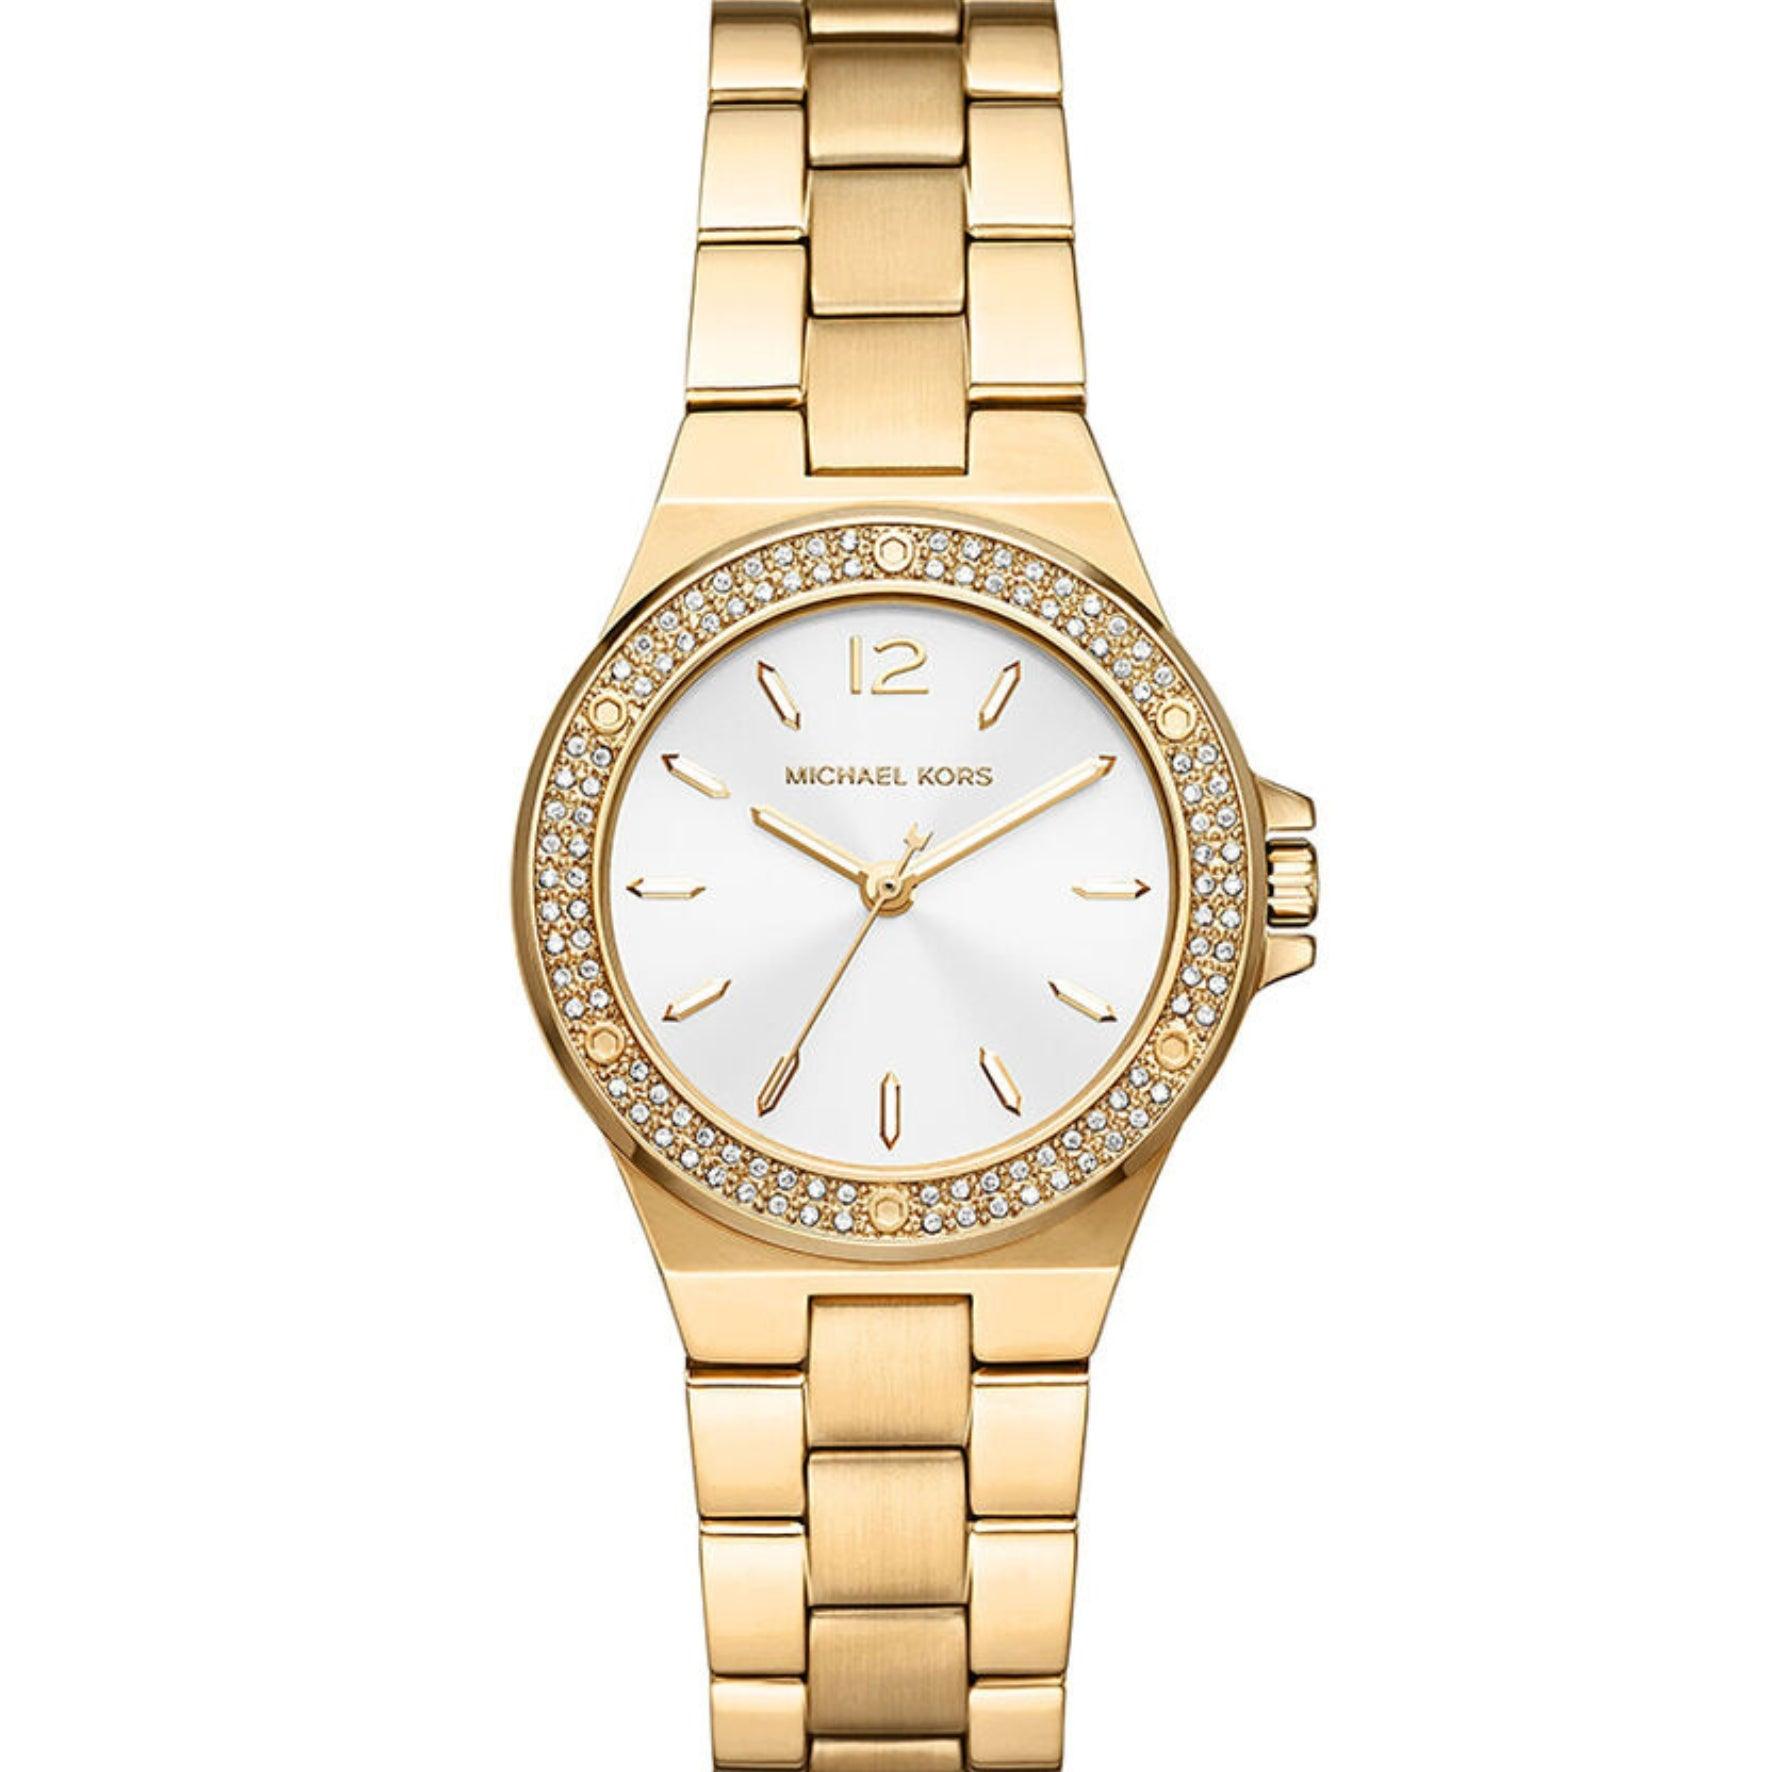 Γυναικείο ρολόι Michael Kors Lennox MK7278 με χρυσό ατσάλινο μπρασελέ, άσπρο καντράν και στρογγυλό στεφάνι 32mm με ζιργκόν.